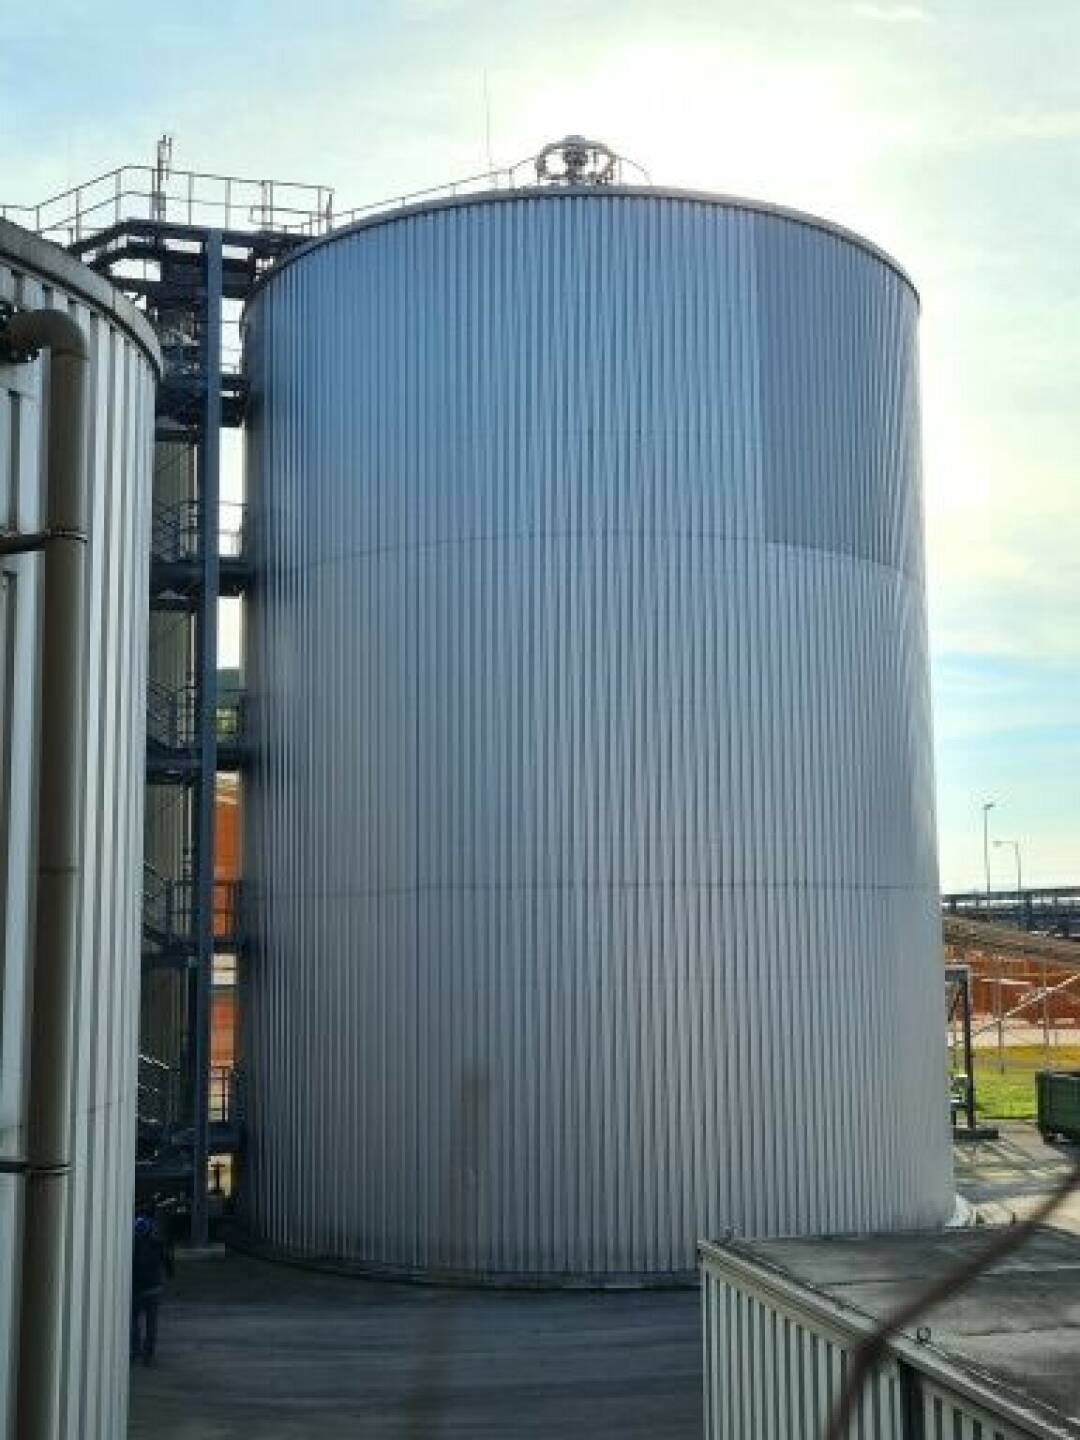 Kompost & Biogas Verband Österreich fordert: Österreichisches Erneuerbares Biogas statt LNG und das Erneuerbare Gase Gesetz praxistauglich auf den Weg bringen und im Parlament beschließen, Fotocredit: KBVÖ